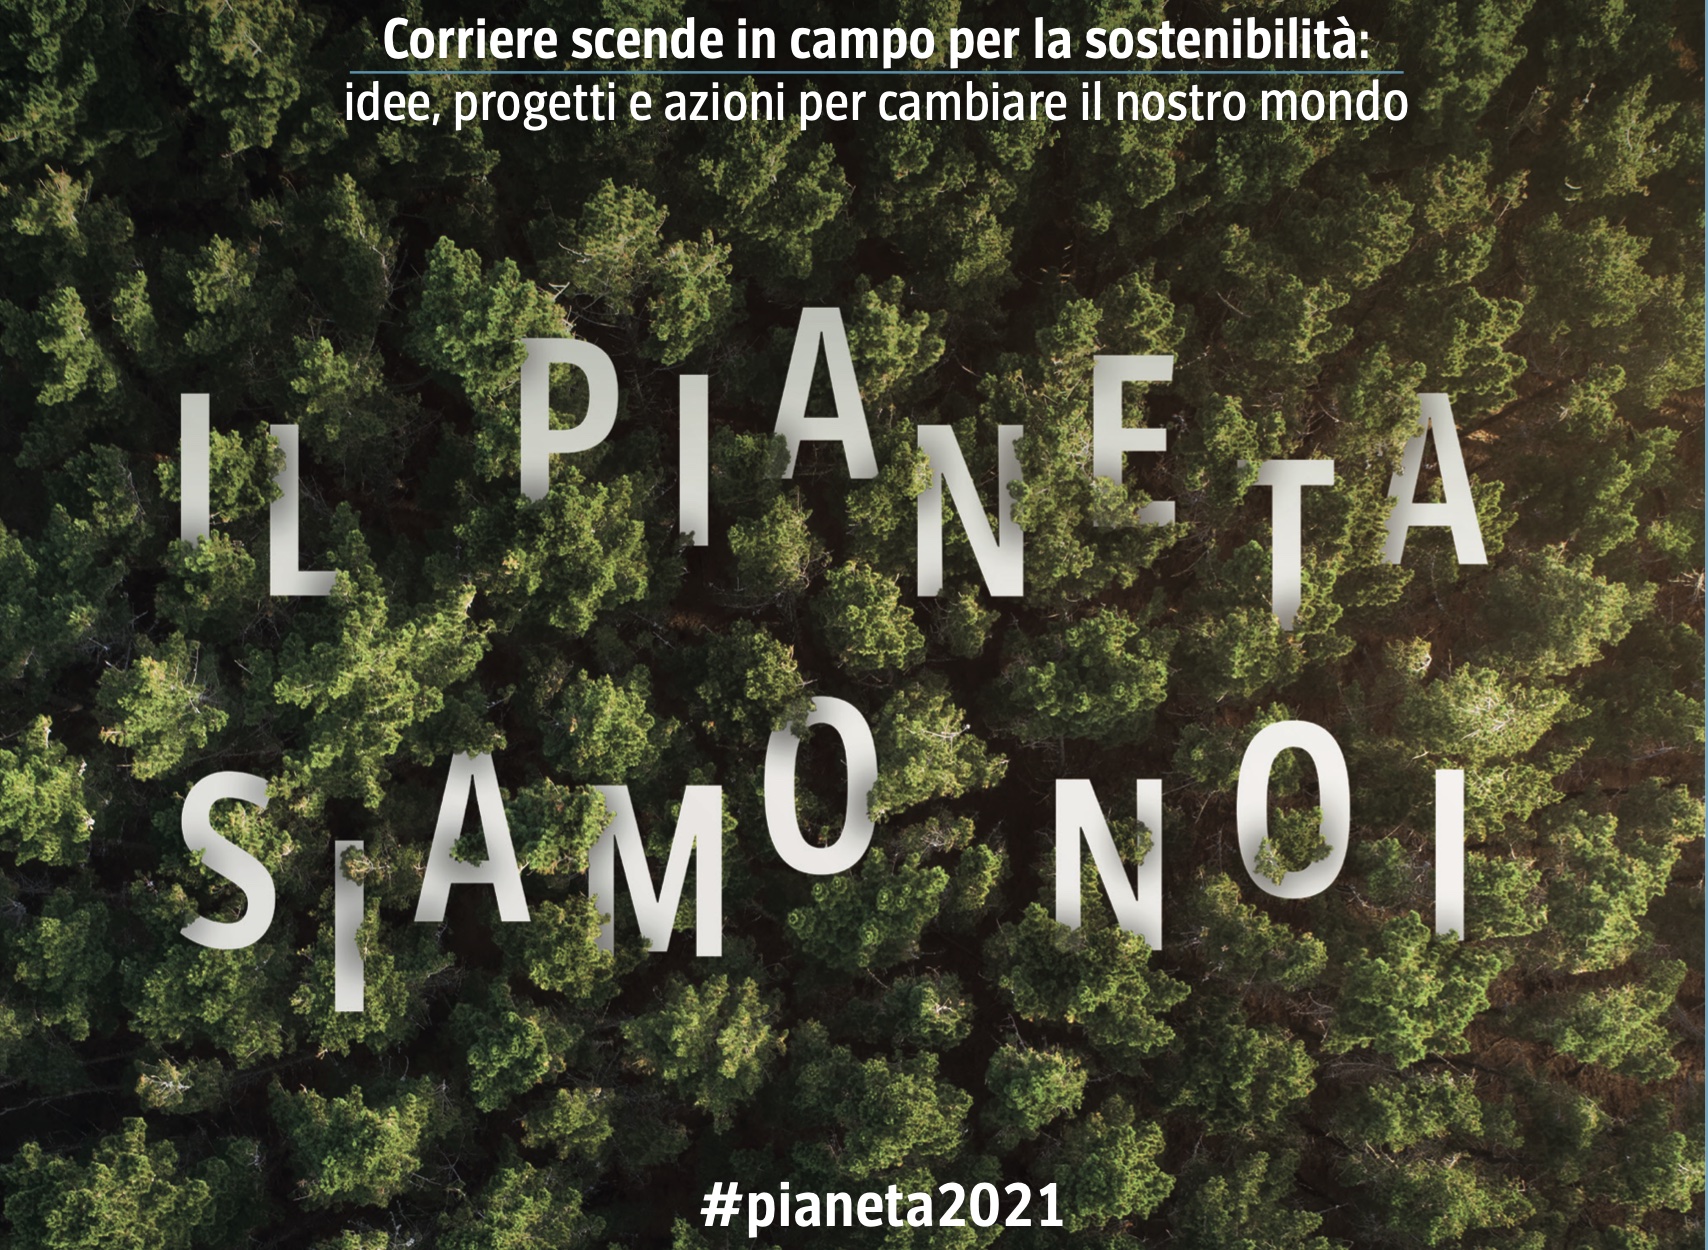 Il presidente Realacci con il Corriere della Sera alla rassegna: “Il pianeta il siamo noi”